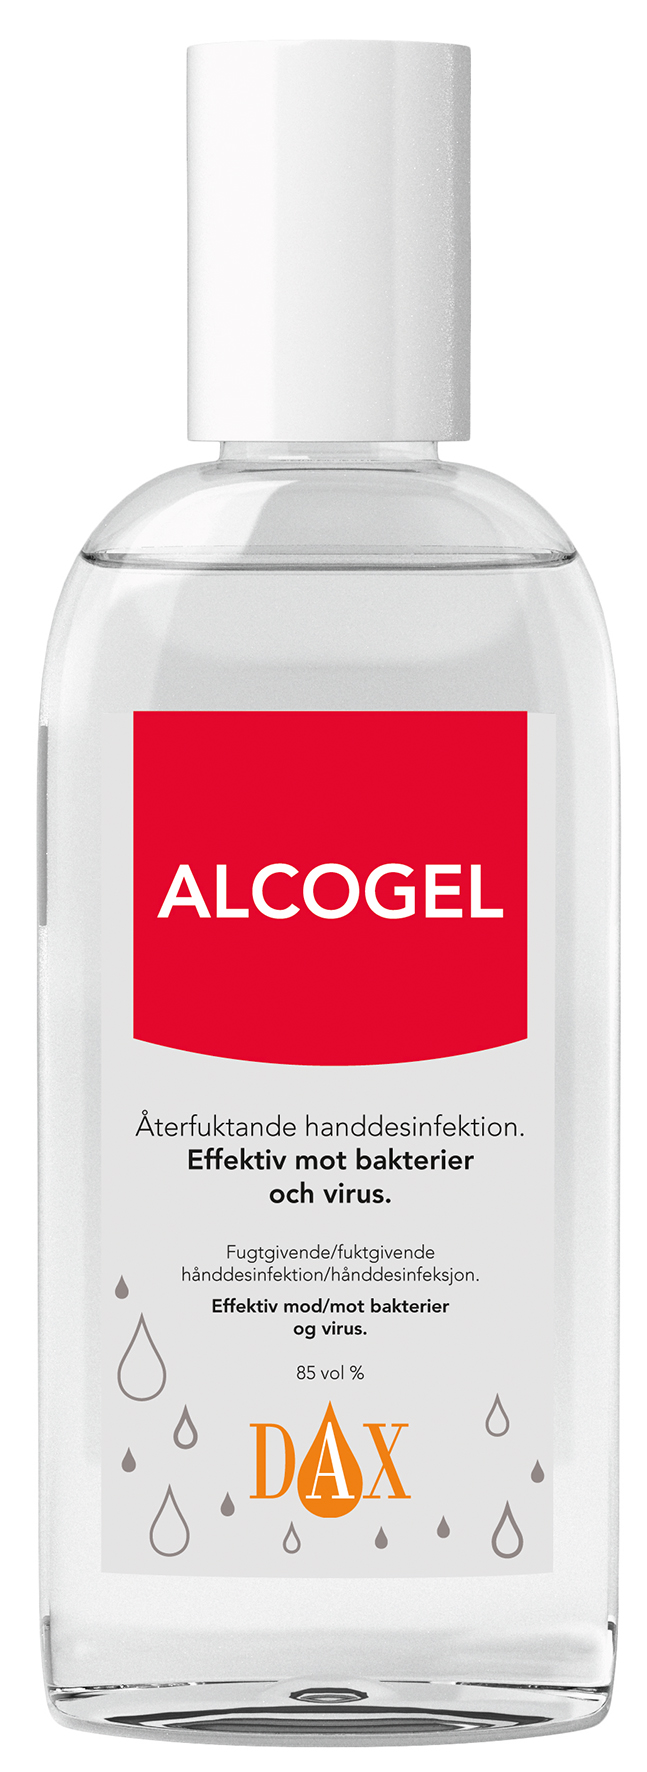 [8555065] Alcogel DAX 85%, 75ml